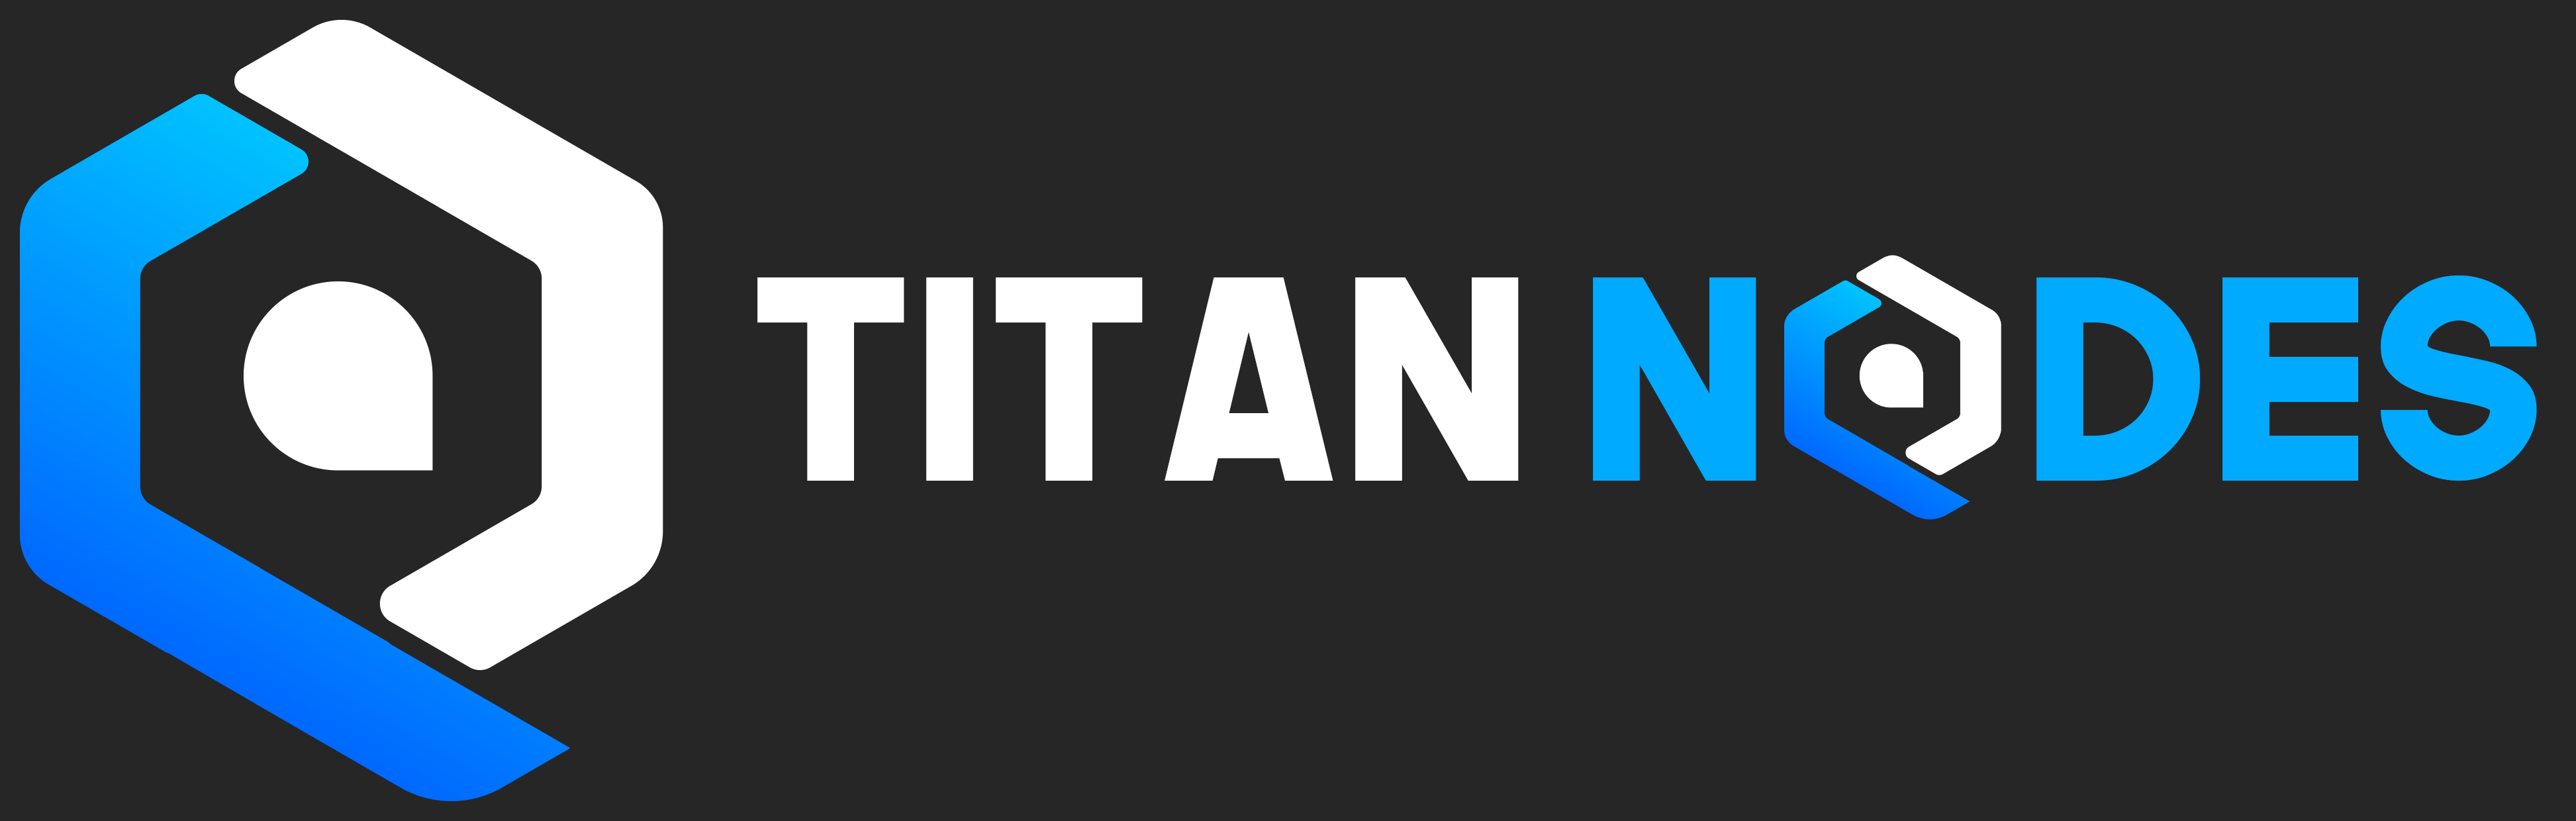 Titan Nodes